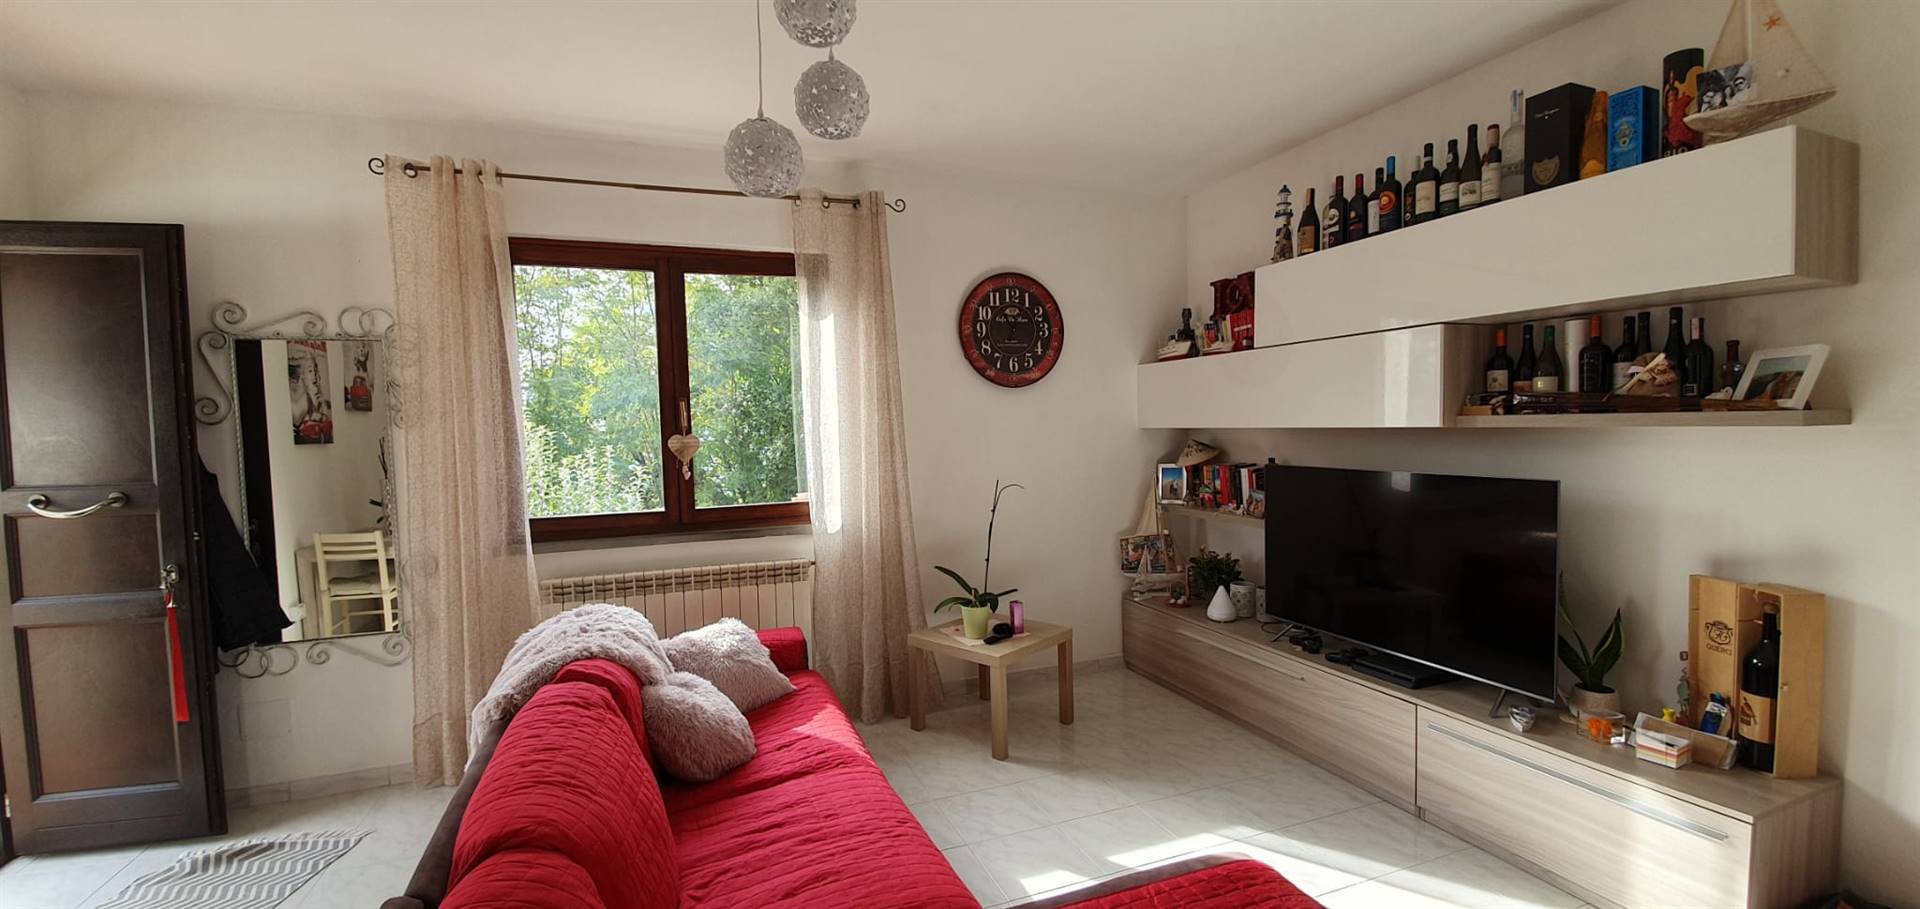 Appartamento in vendita a Monterotondo Marittimo, 4 locali, prezzo € 135.000 | CambioCasa.it